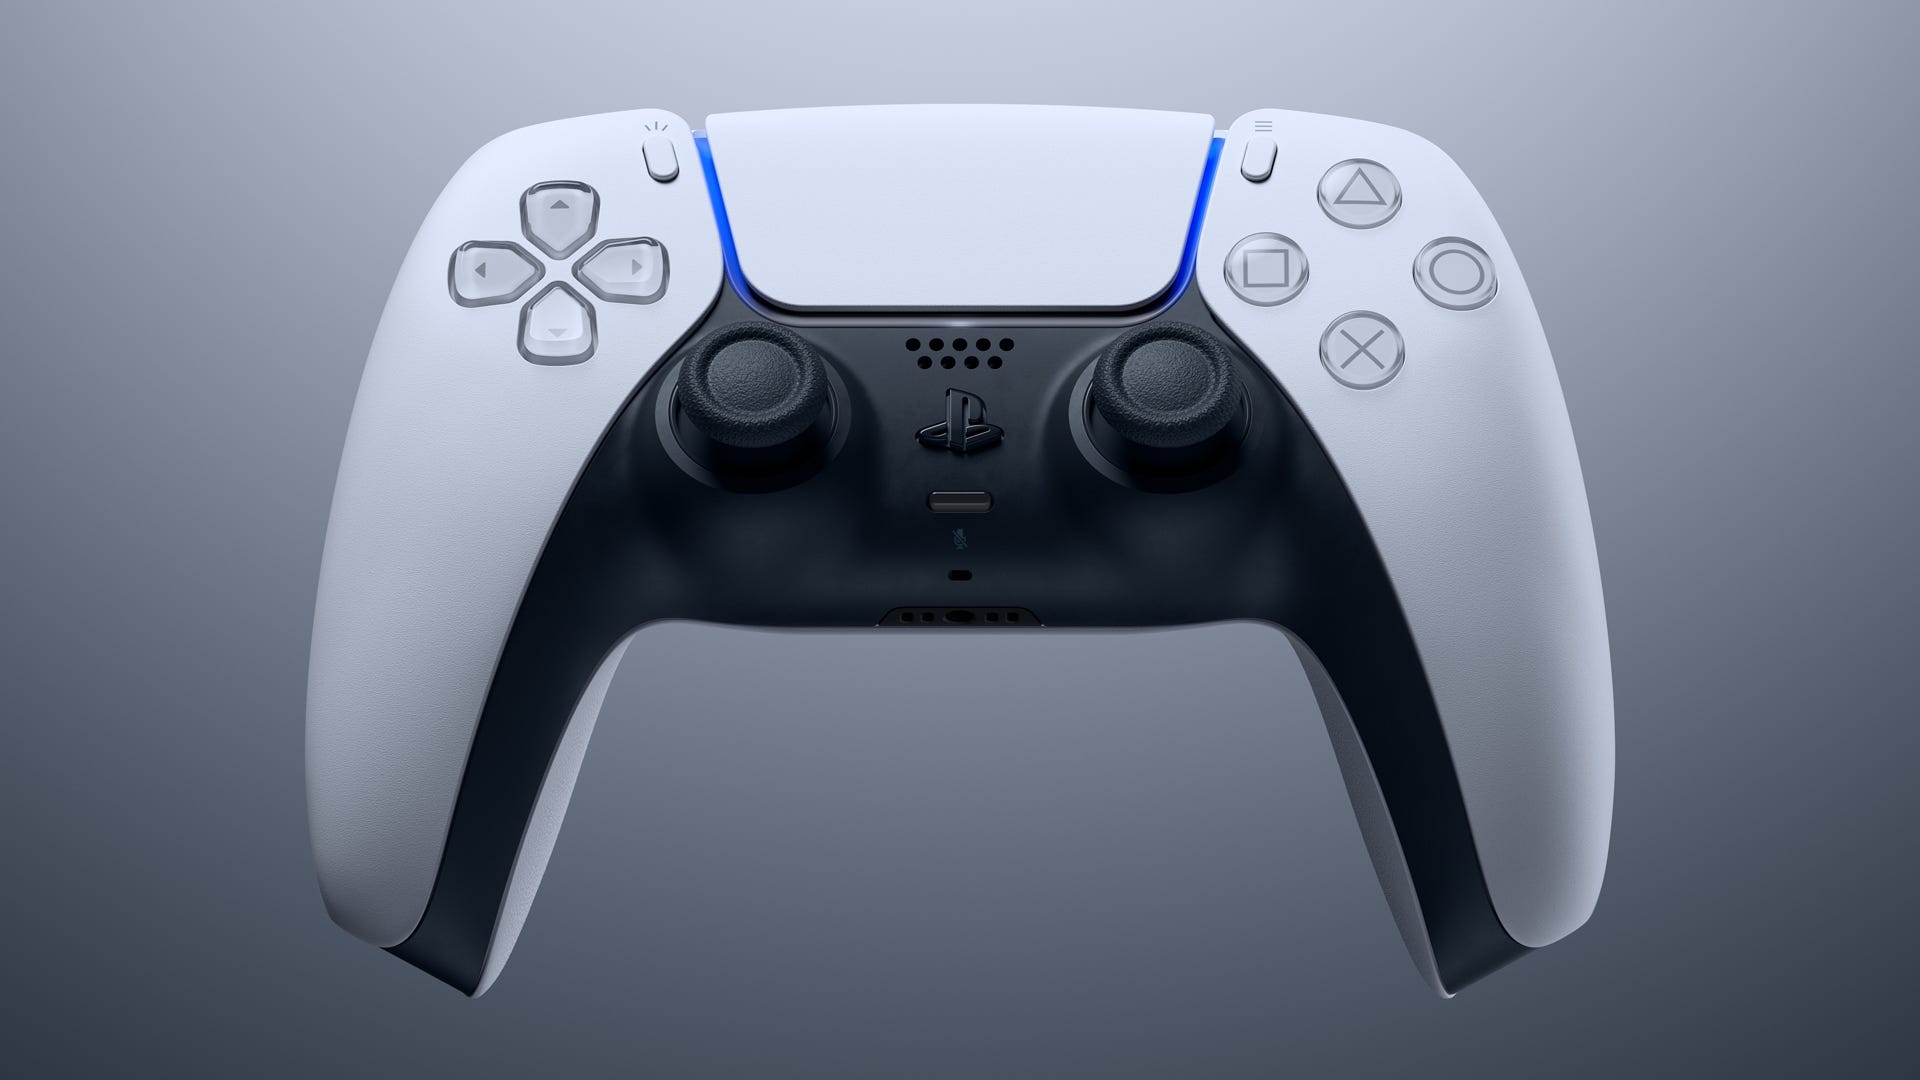 A Sony legújabb szabadalma azt sugallja, hogy egy DualSense kontrollert fejleszt, amely játékmeneti tippeket tud adni